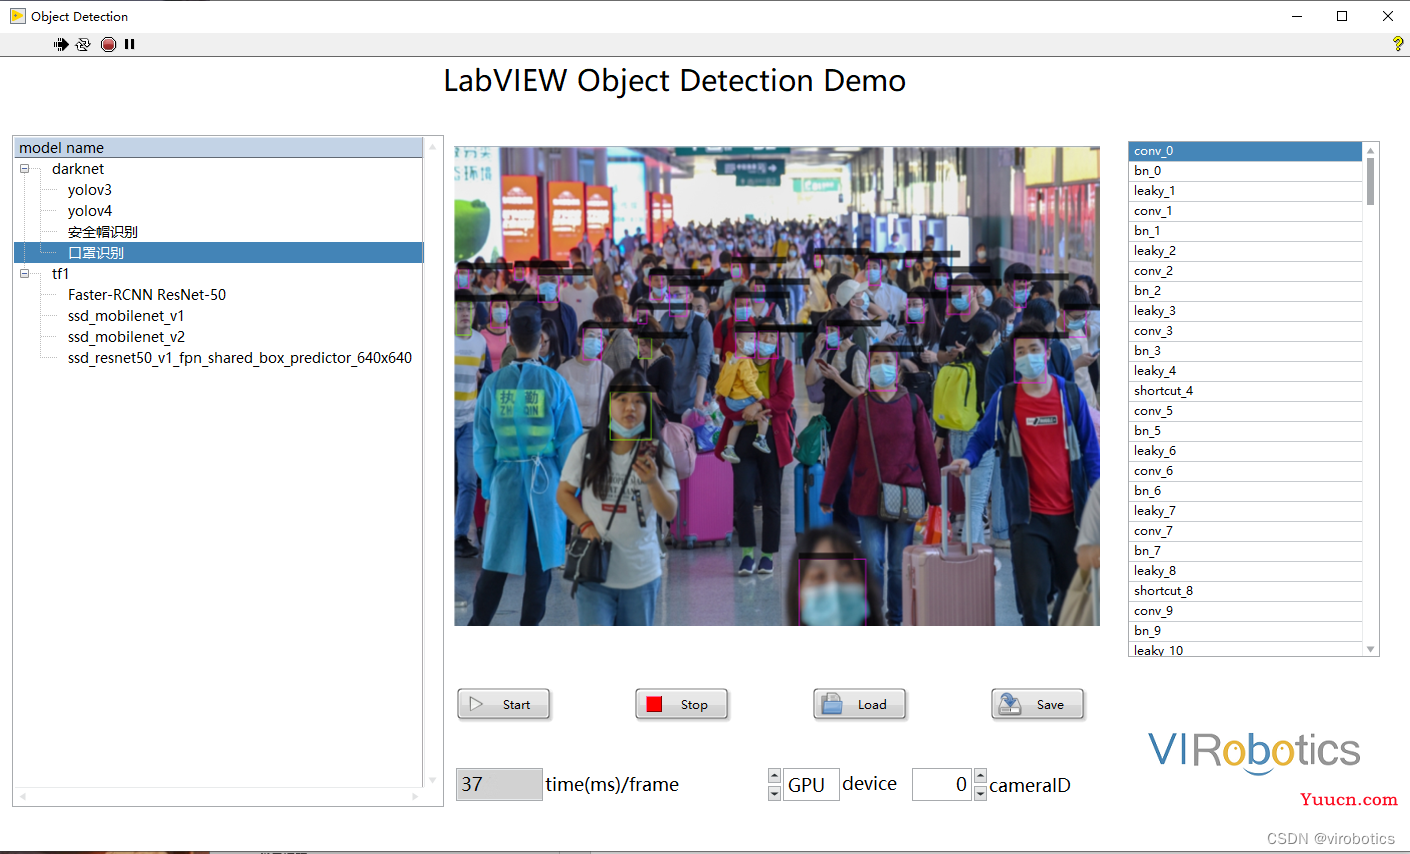 使用LabVIEW 实现物体识别、图像分割、文字识别、人脸识别等深度视觉